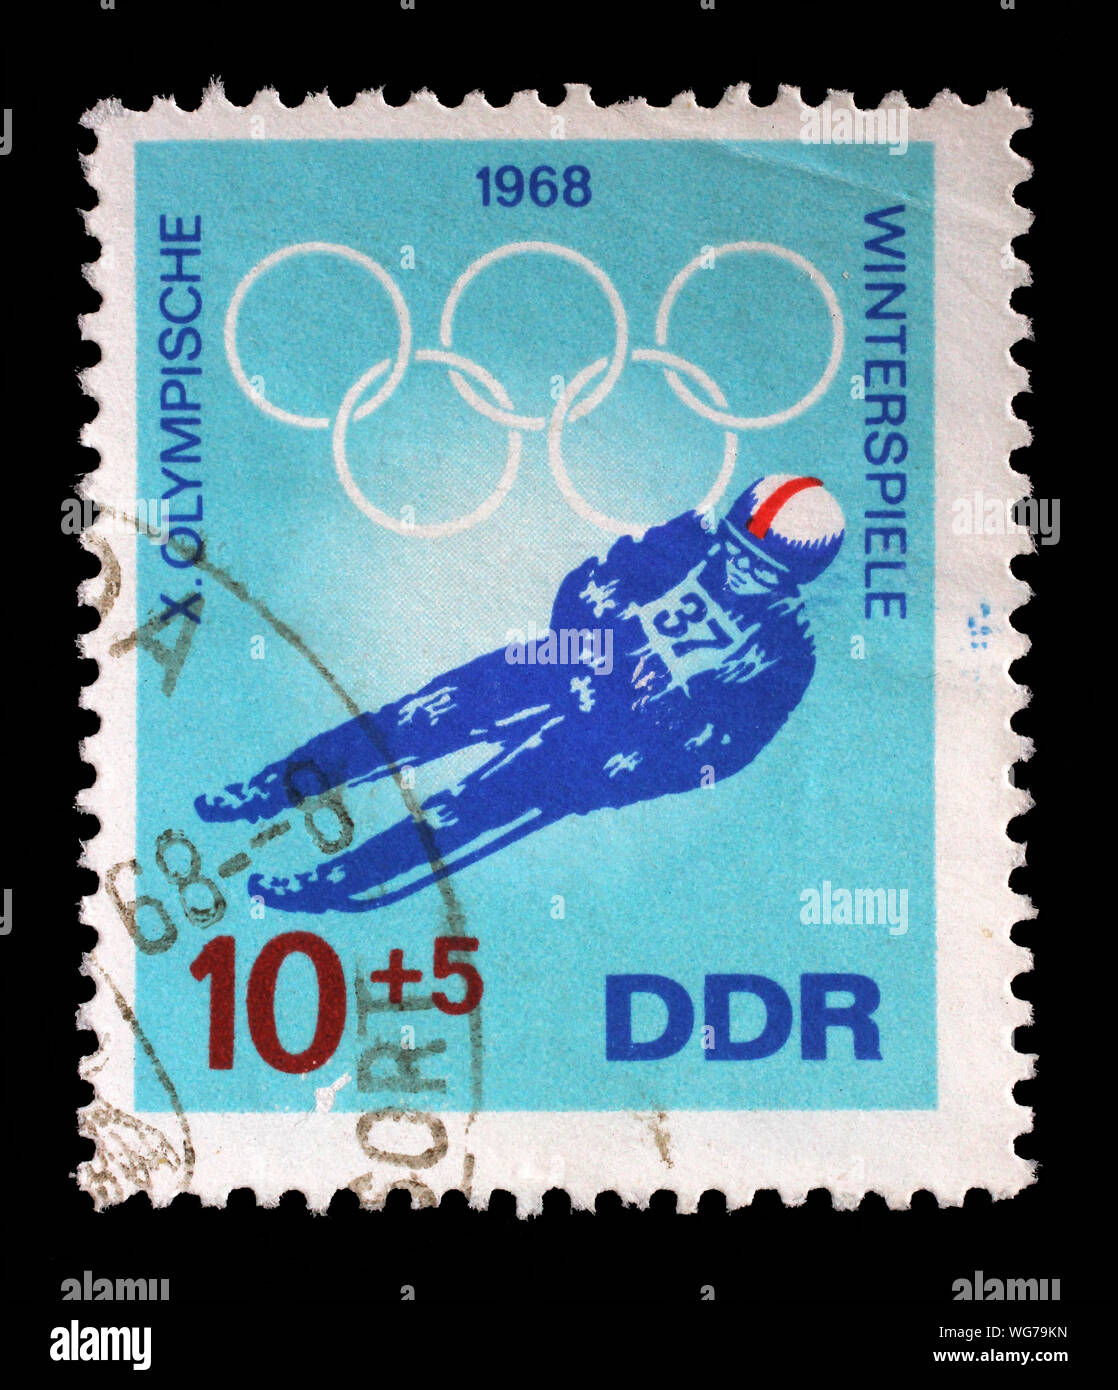 Stempel ausgestellt in Deutschland - Demokratische Republik (DDR) zeigt Luge, die olympischen Winterspiele 1968 in Grenoble, circa 1968. Stockfoto